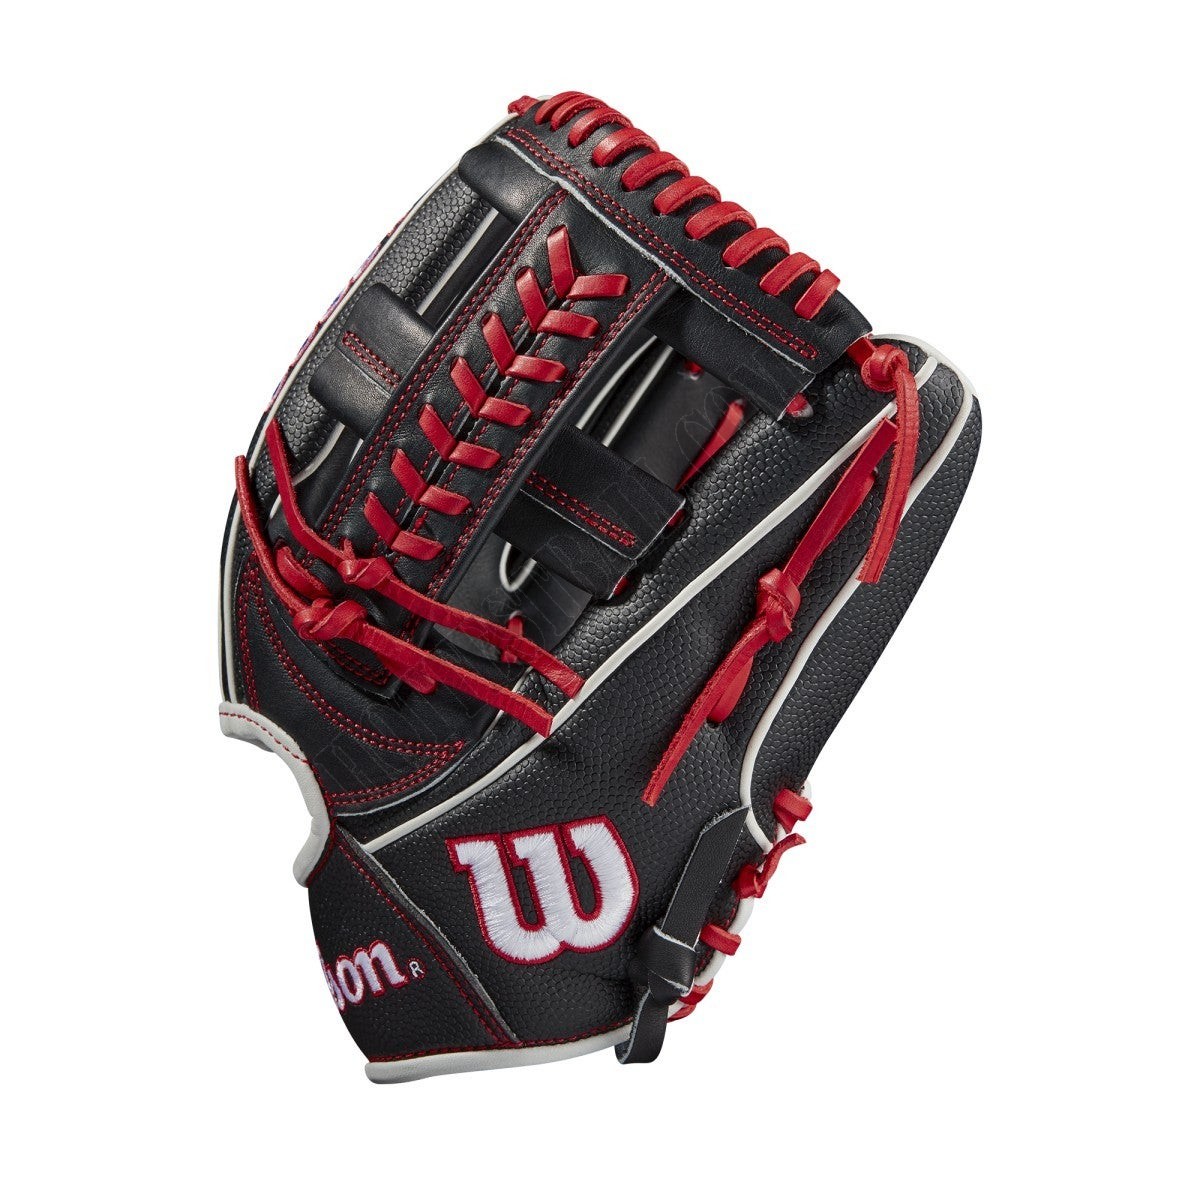 2021 A2000 1785SS 11.75" Infield Baseball Glove ● Wilson Promotions - -3